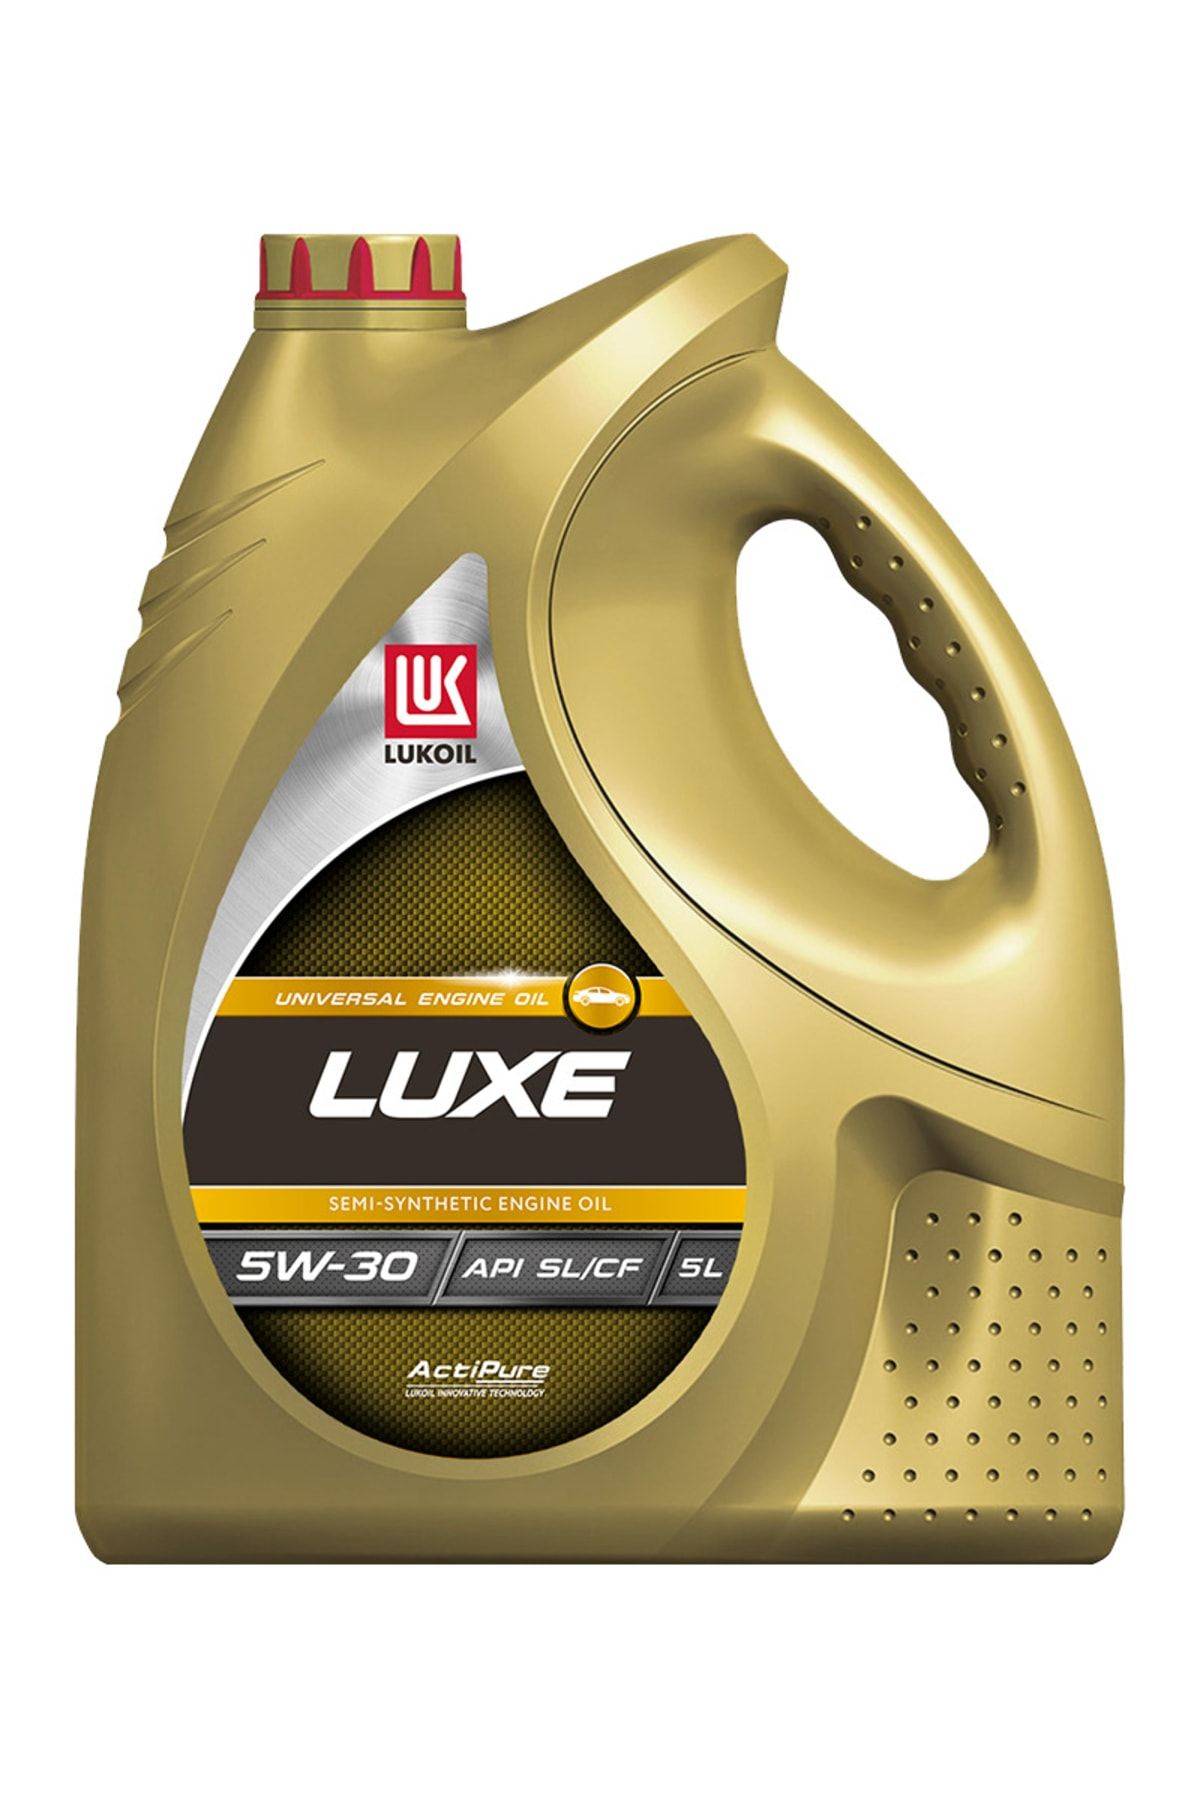 Масло лукойл 5w40 артикул. Lukoil Luxe 10w-40. Масло Лукойл 10w 40 полусинтетика. Лукойл Люкс SAE 10w-40, API SL/CF 5 Л. Лукойл Luxe 10w 40 полусинтетика.